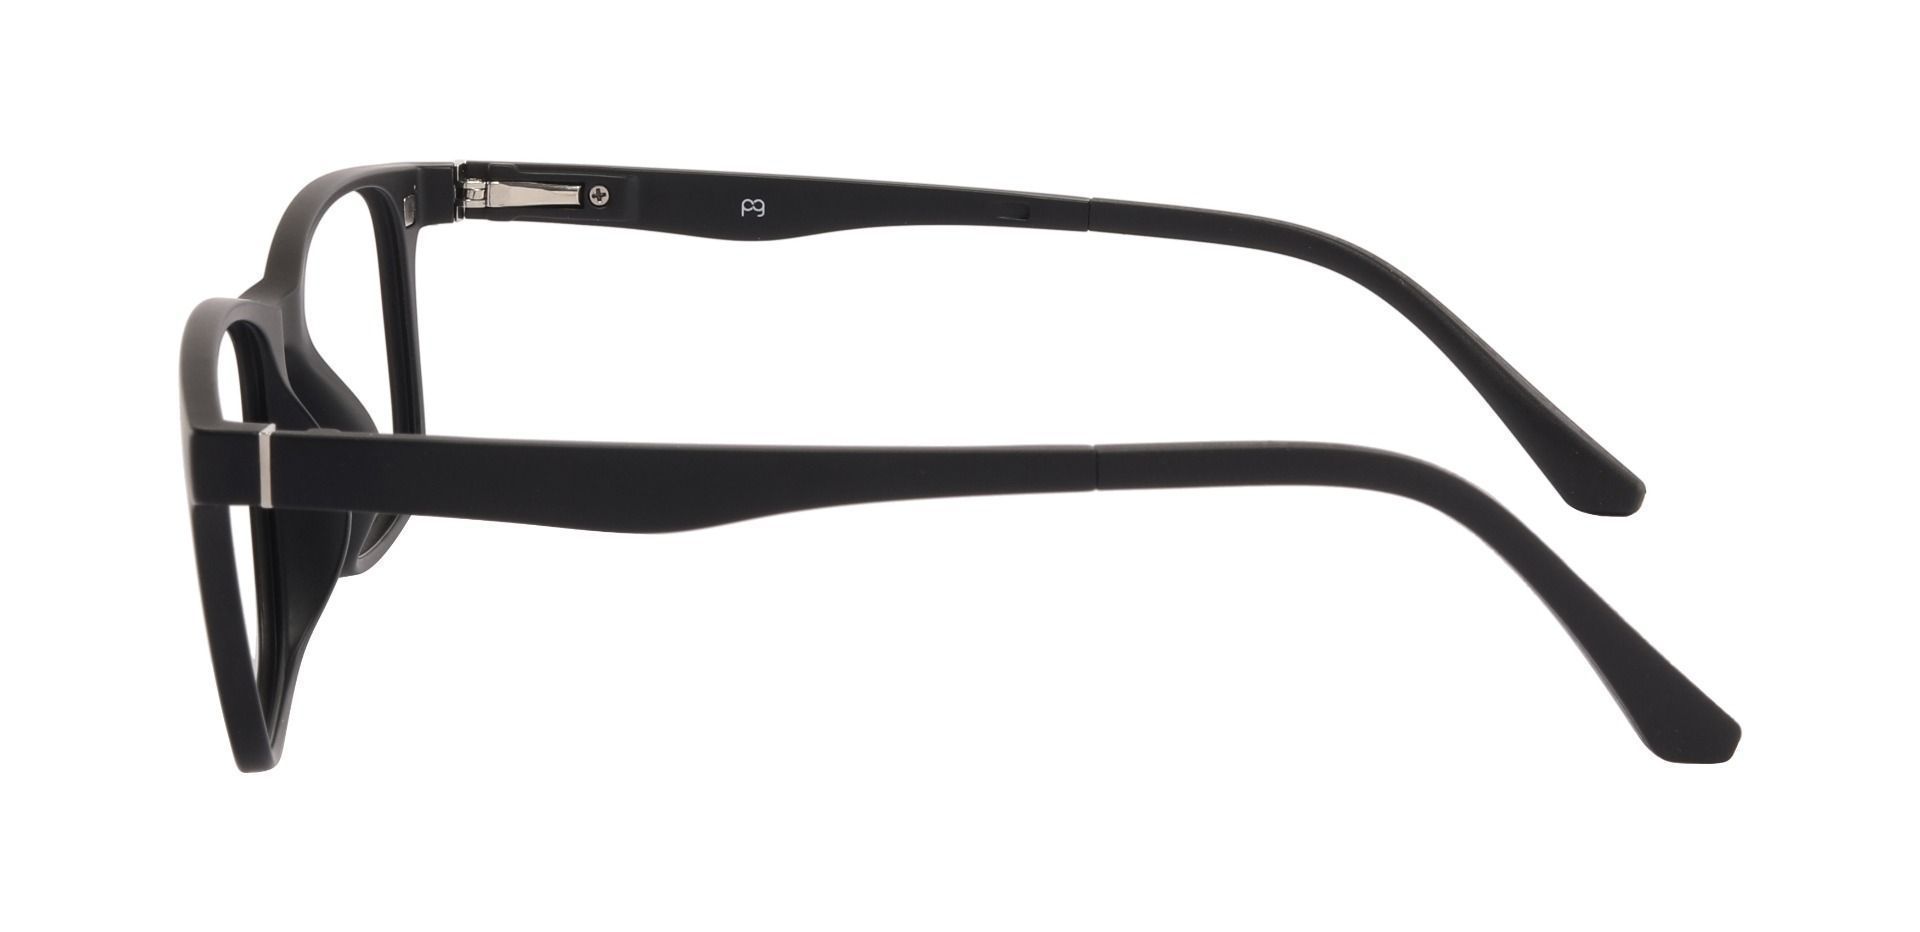 Torrance Rectangle Prescription Glasses - Black | Men's Eyeglasses ...